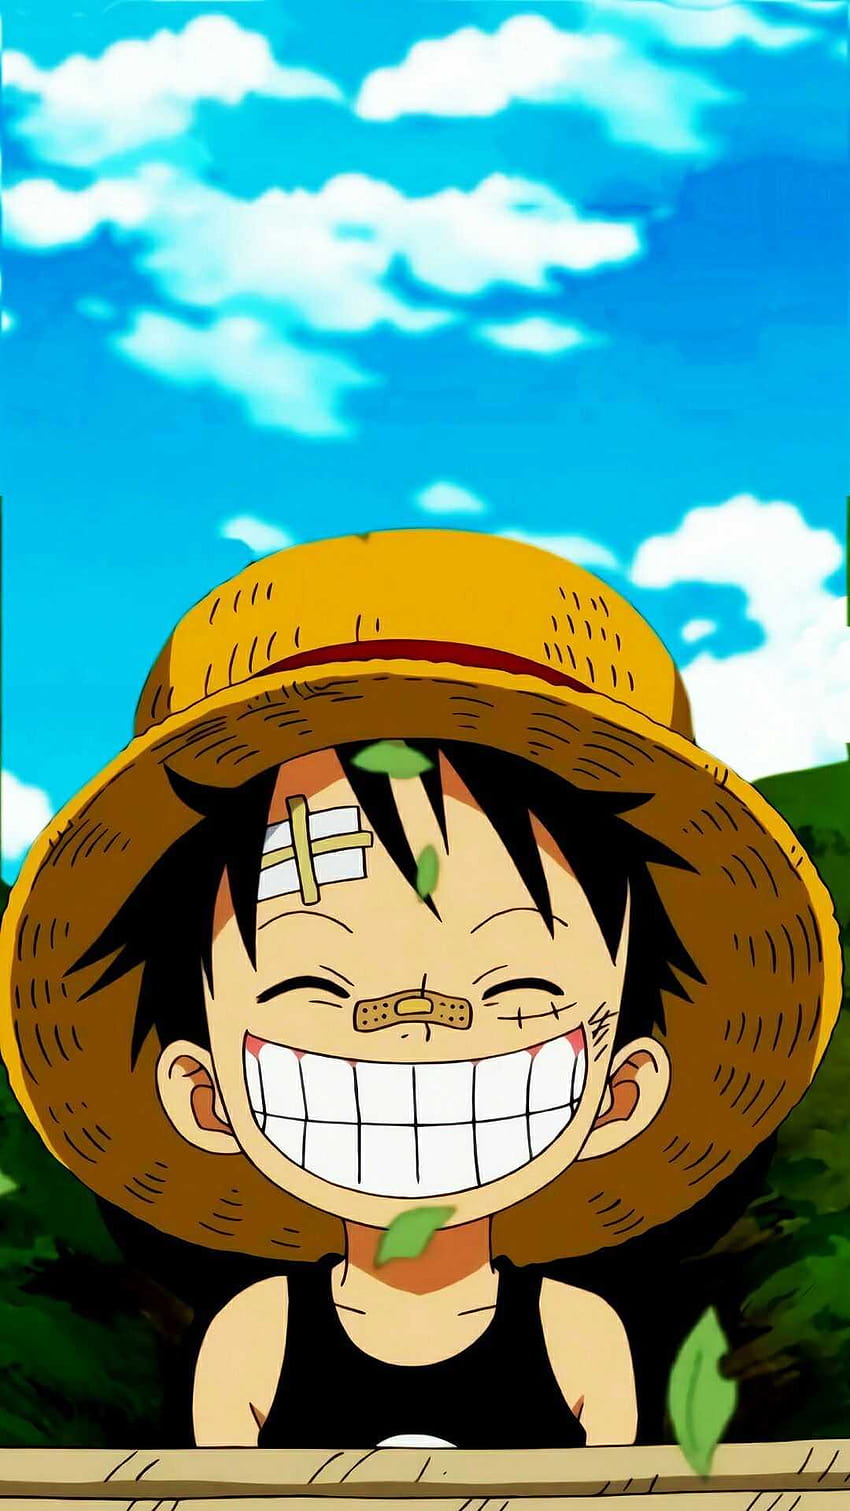 Luffy HD wallpapers: Luffy - nhân vật chính của bộ anime nổi tiếng One Piece, với tính cách lạc quan, dũng cảm và không ngừng đi tìm hải tặc One Piece. Nếu bạn là người hâm mộ của nhân vật này, bộ sưu tập Luffy HD Wallpapers của chúng tôi chắc chắn sẽ khiến bạn hạnh phúc. Độ phân giải cao và chất lượng hình ảnh tuyệt vời sẽ giúp bạn cảm thấy như đang sống trong thế giới One Piece.